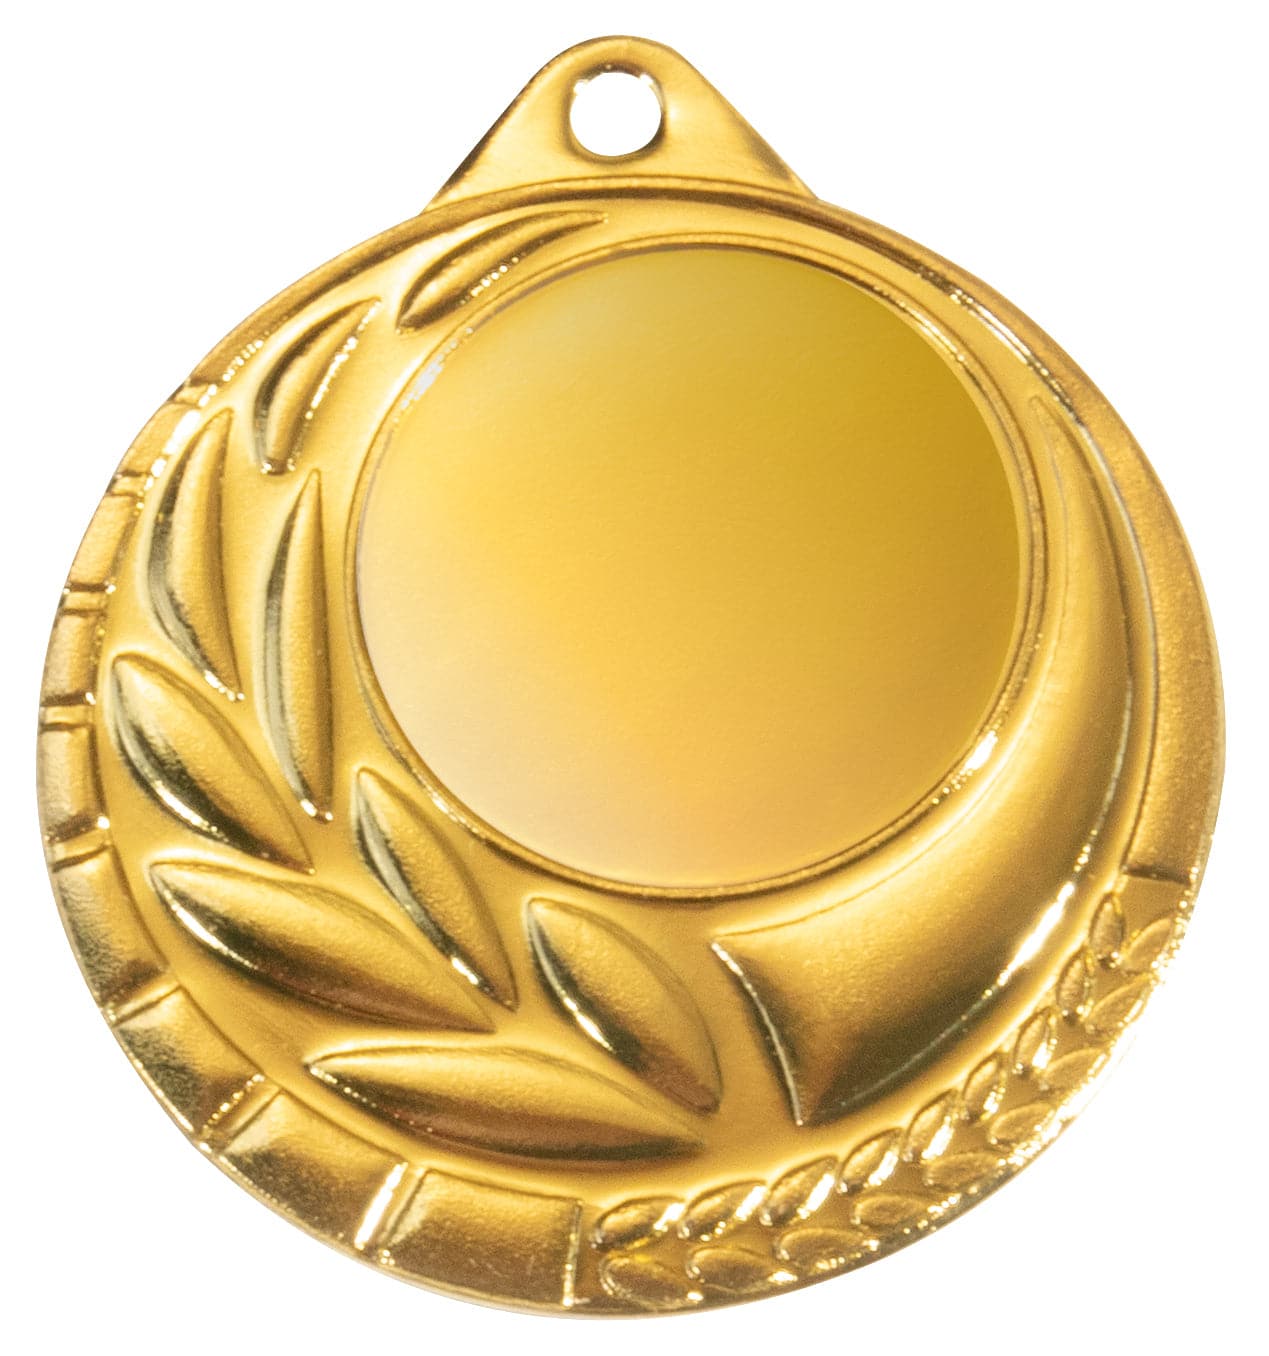 Goldmedaille mit leerem zentralen Bereich und Lorbeerkranzdesign als POMEKI Medaillen Bremerhaven 50 mm PK79343g-E25 Auszeichnung.